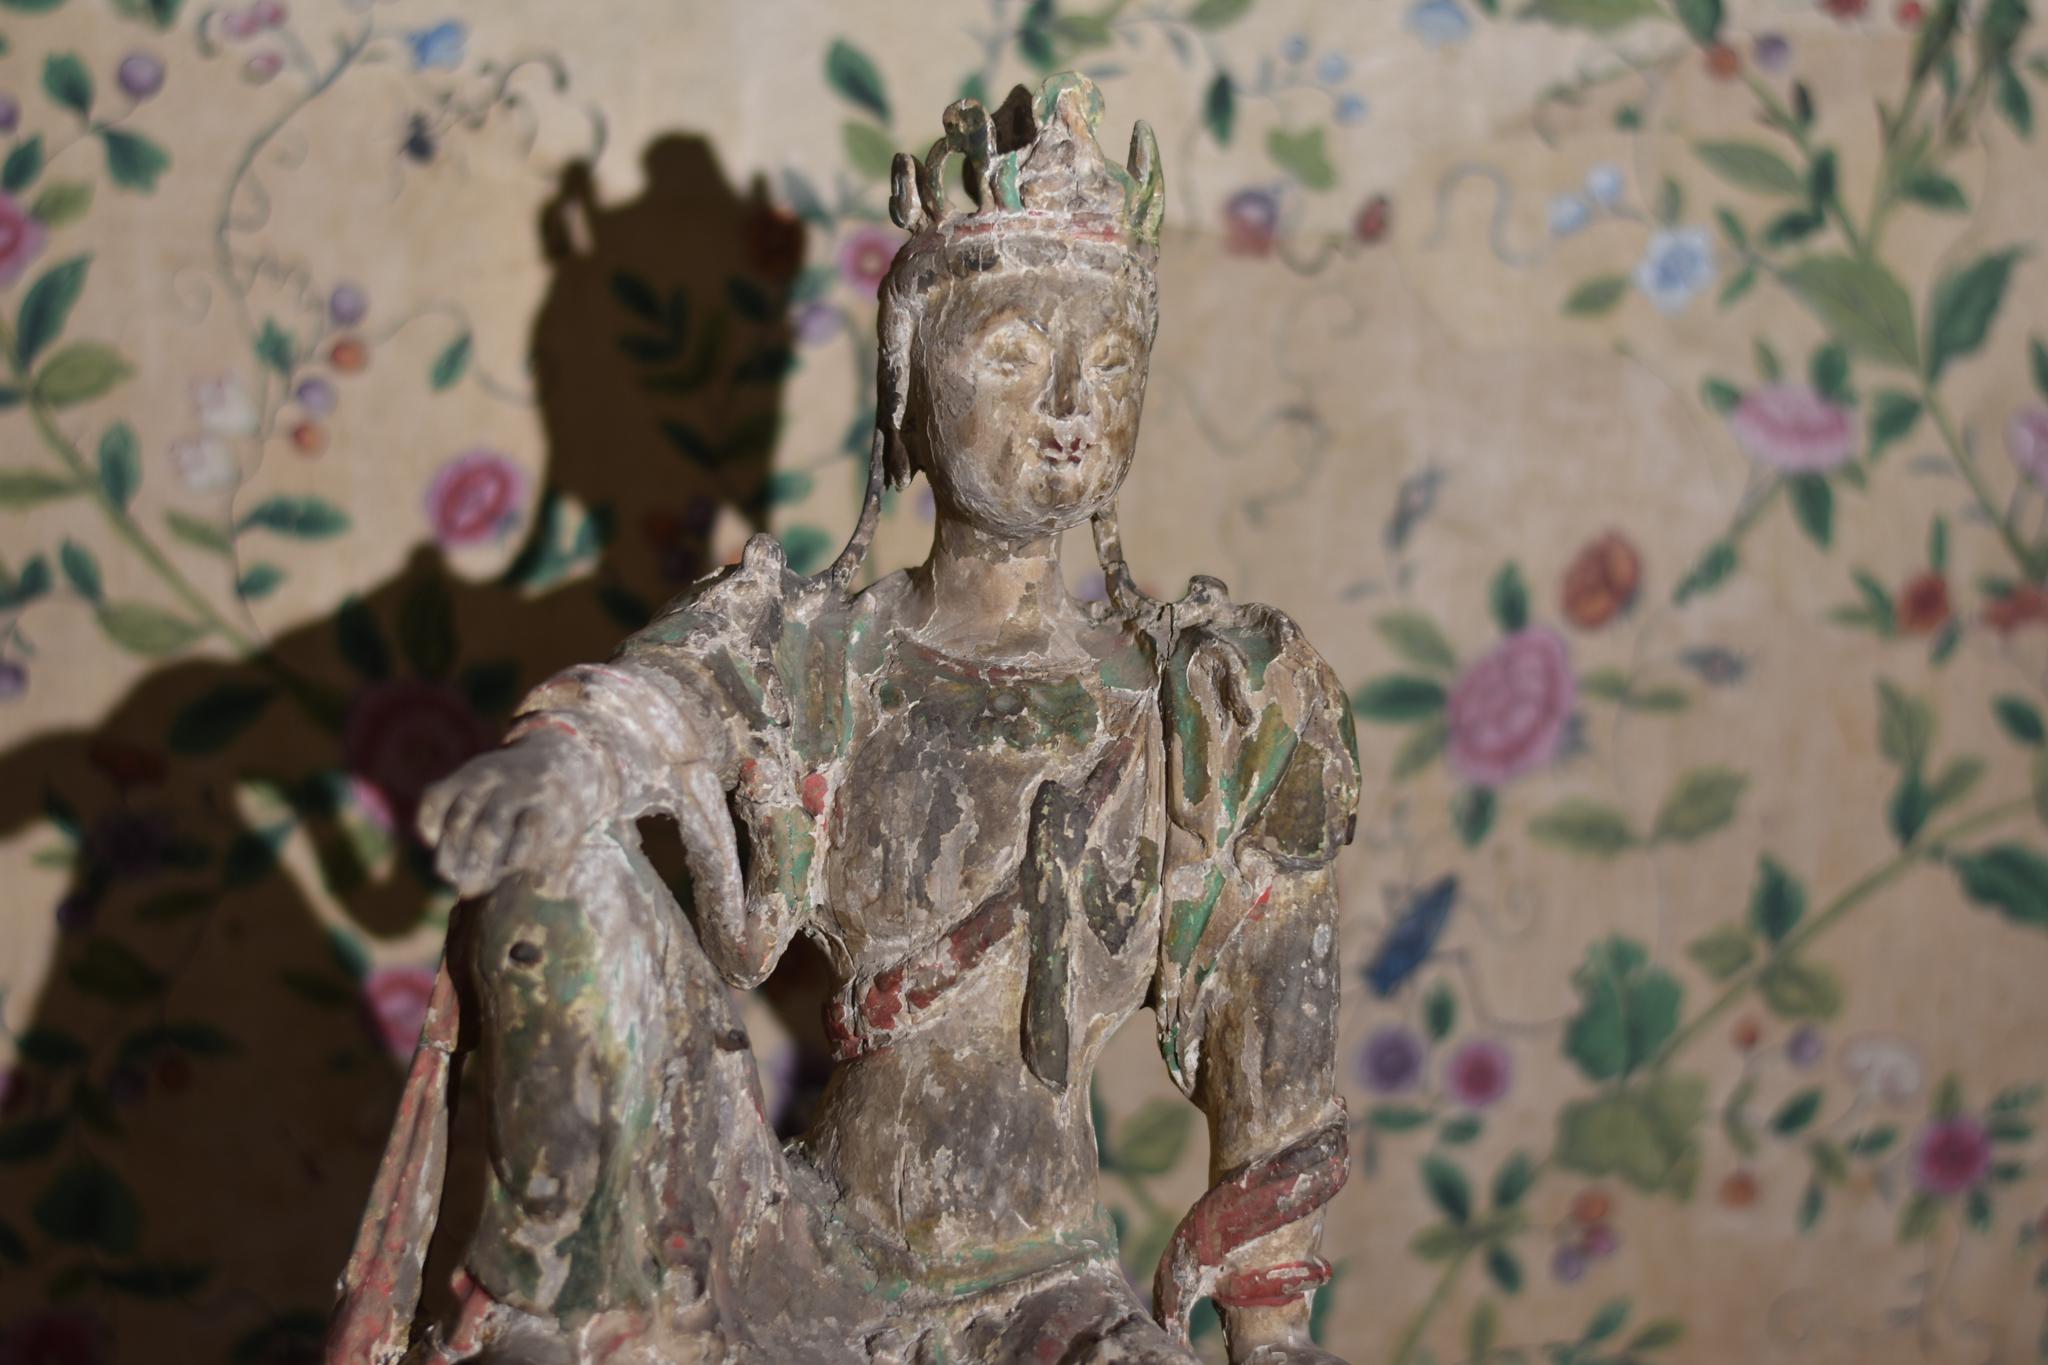 Eine seltene chinesische Guan Yin-Figur, frühe Ming-Dynastie (1368-1644).

Schön bemaltes, geschnitztes Holz, das einen großen Teil seiner offenbar ursprünglichen polychromen Dekoration beibehält. Einige geringfügige Verluste ganz im Einklang mit